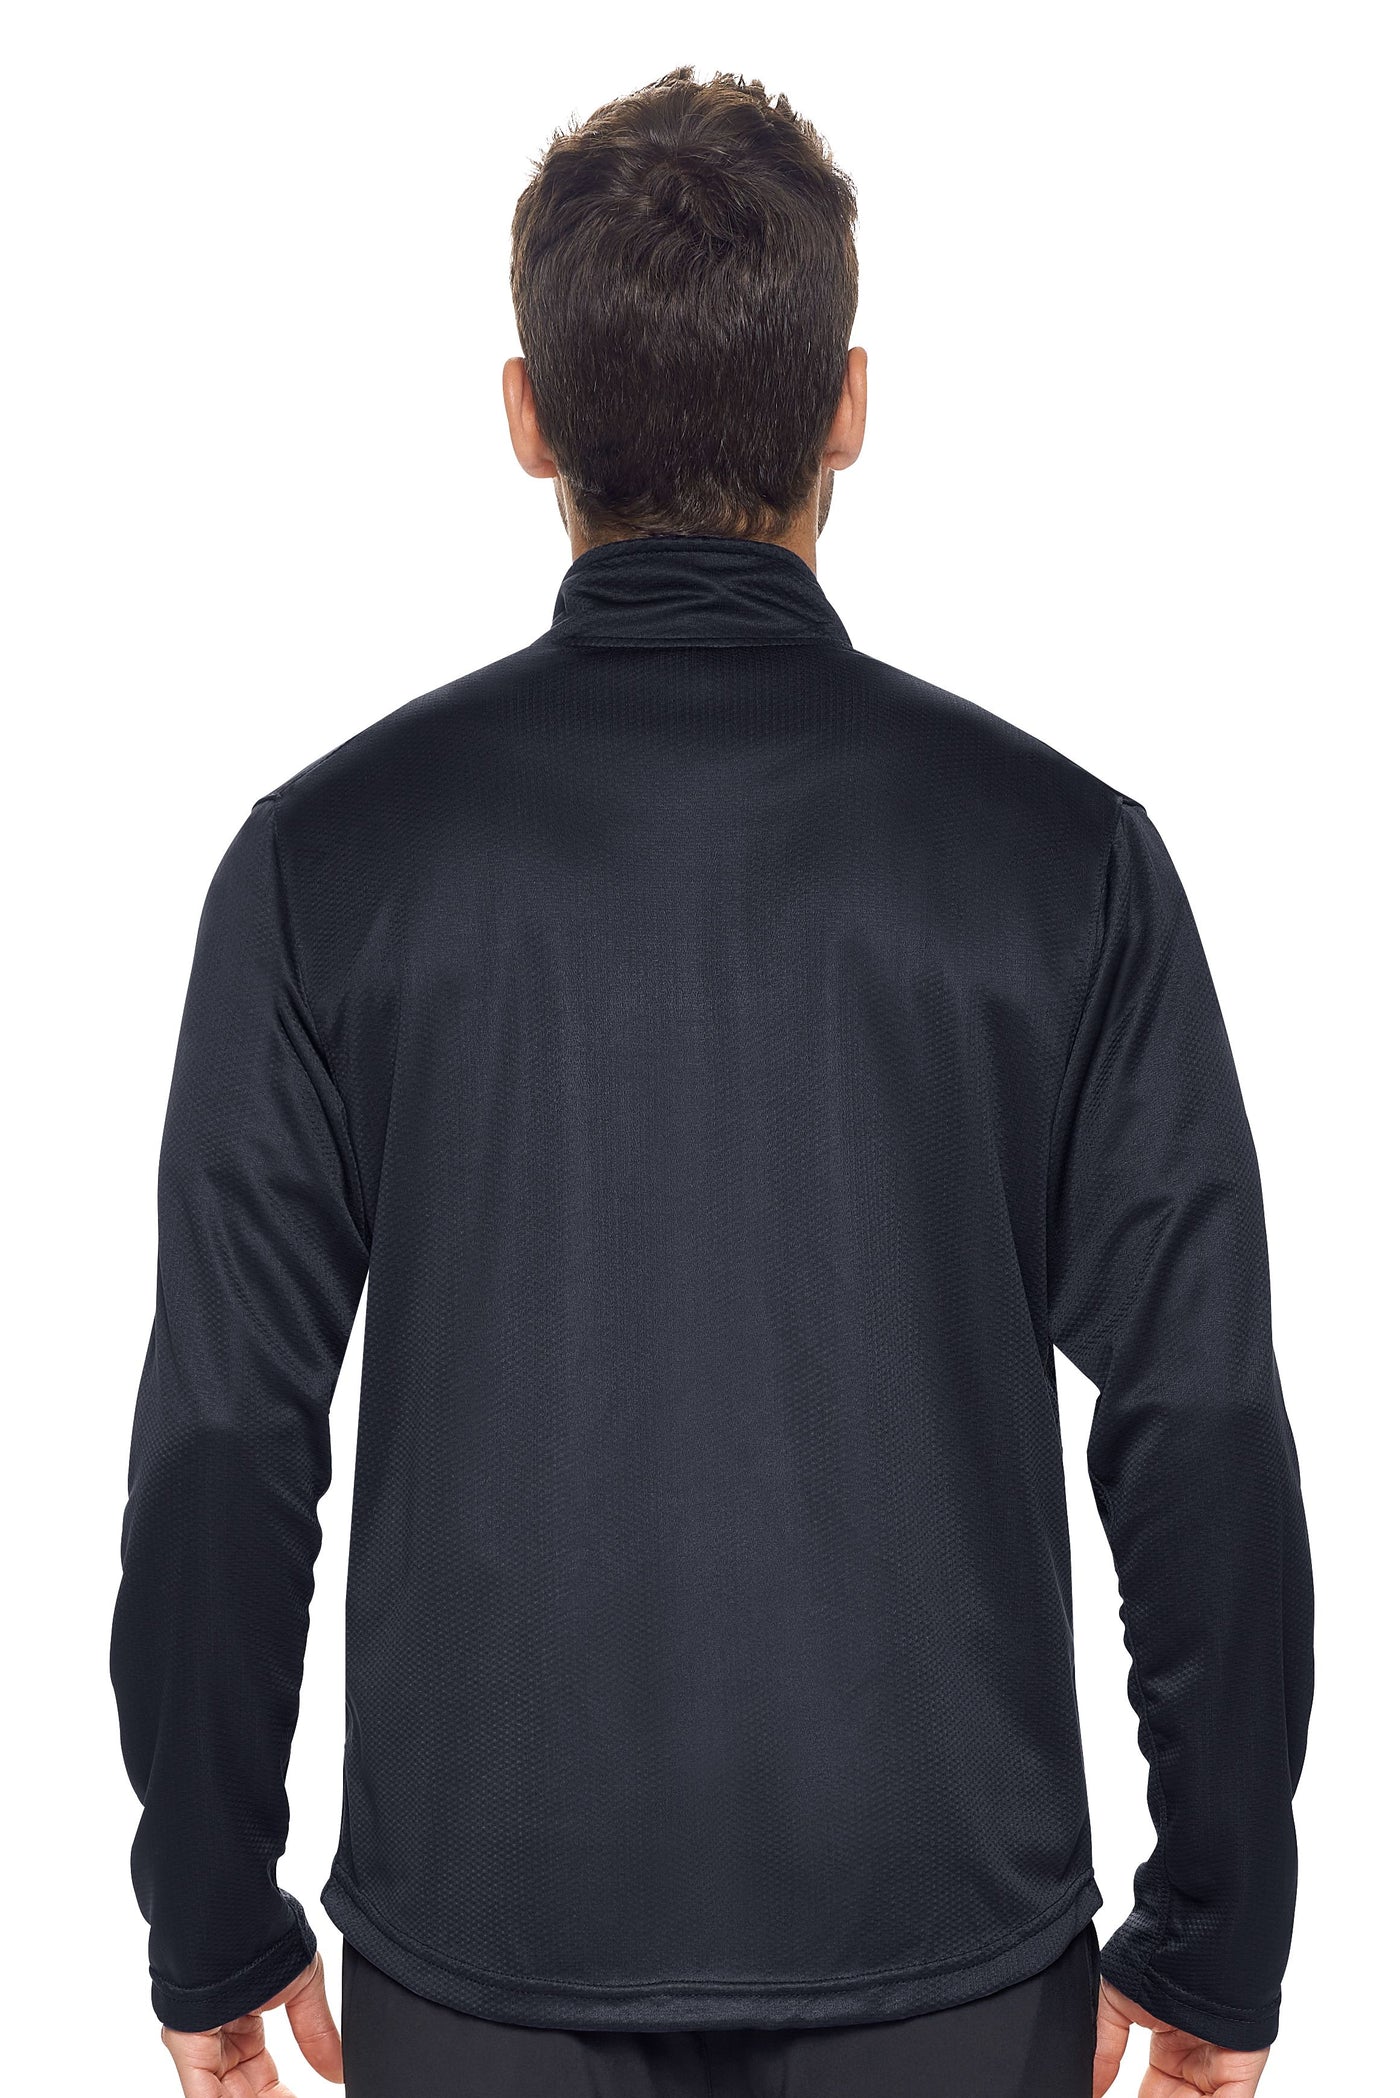 Sportsman Jacket 🇺🇸 - Expert Brand Apparel#color_black